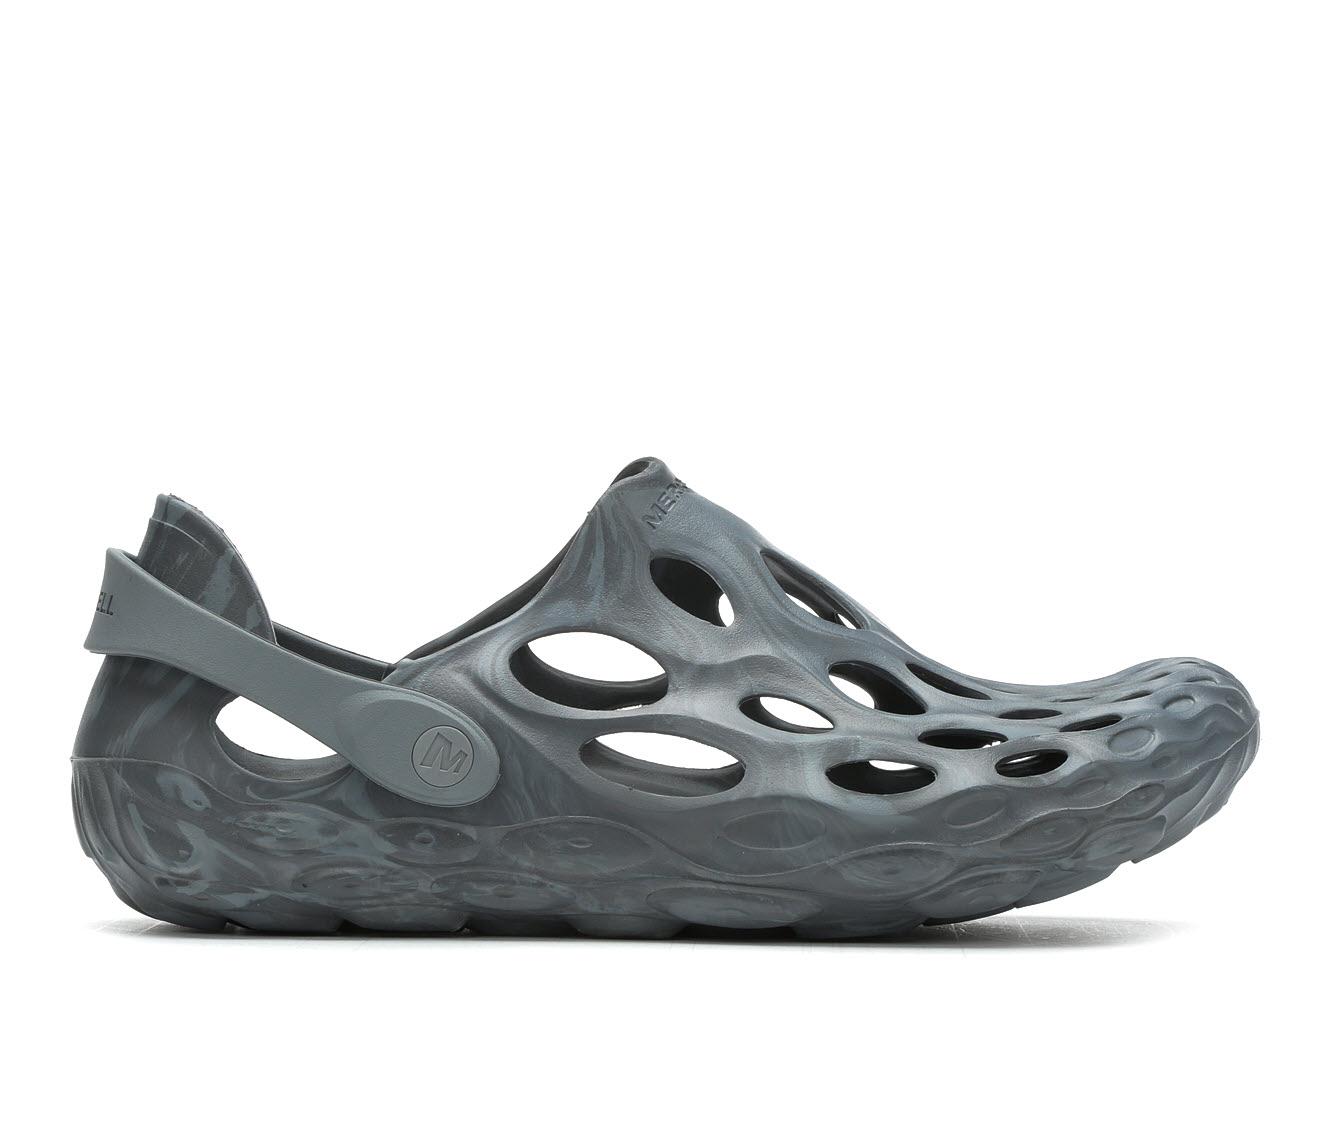 Merrell Hydro Moc Shoe in Gray for Men - Lyst